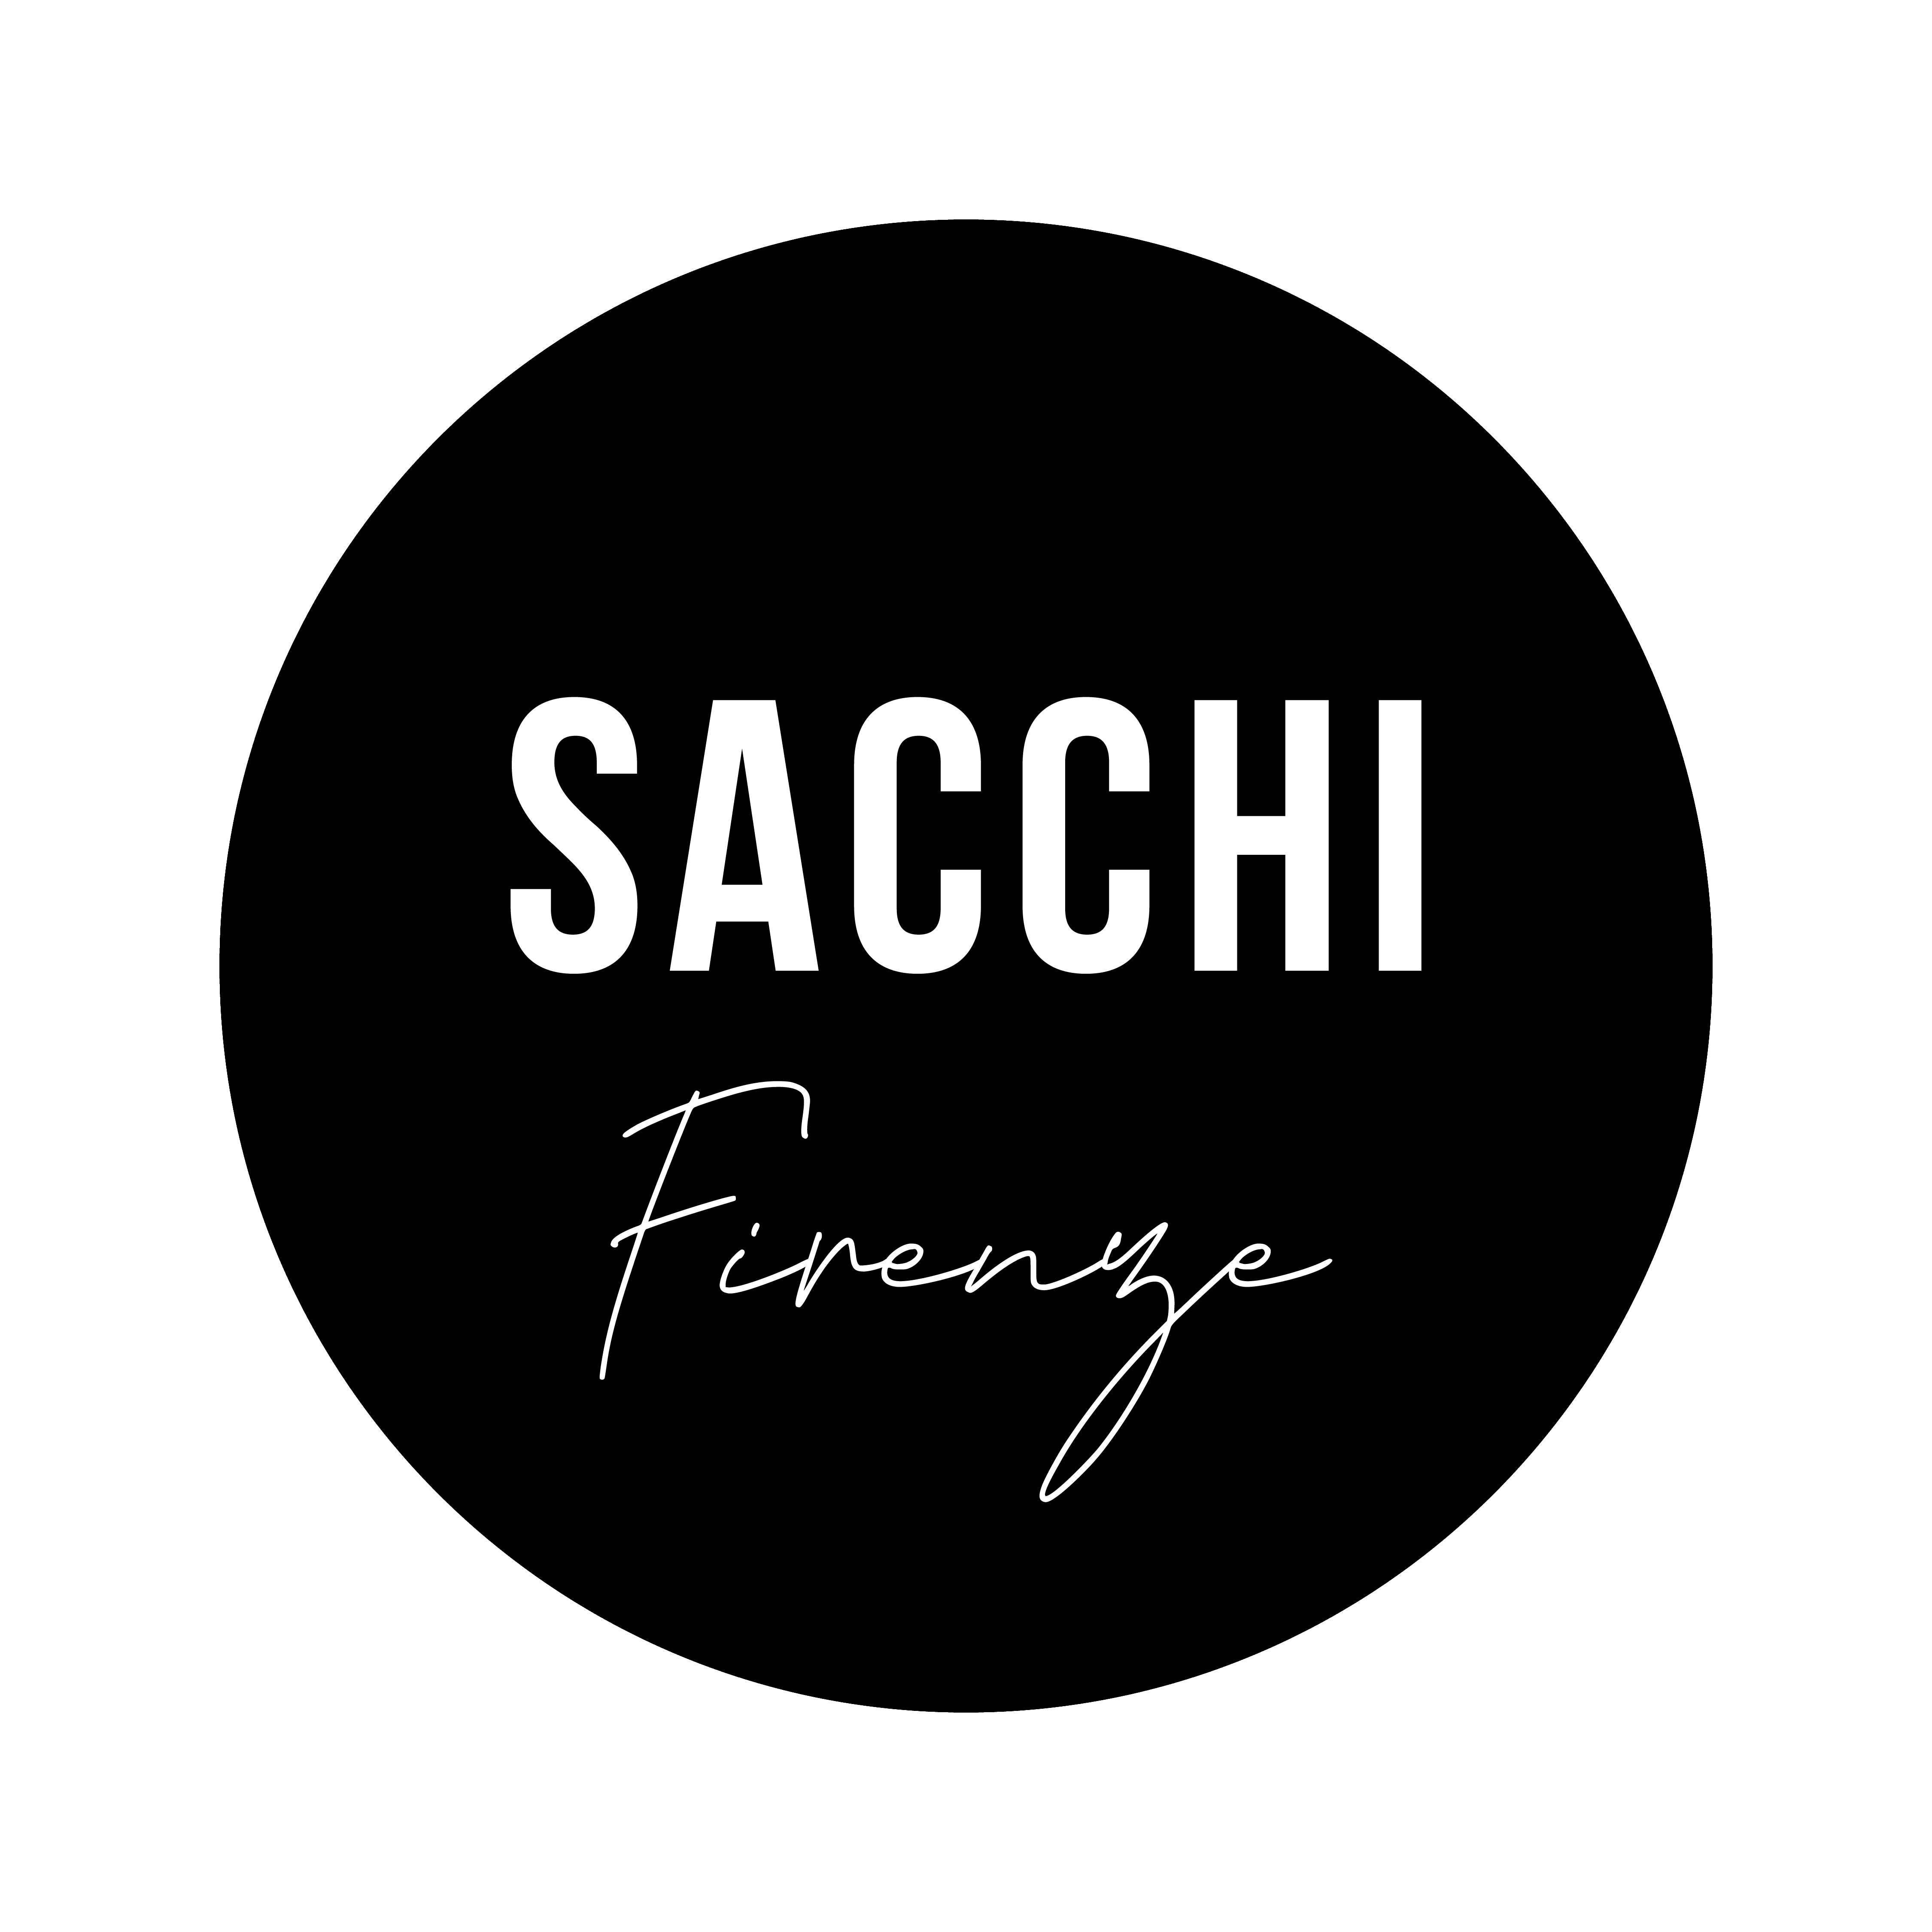 Sacchi Firenze